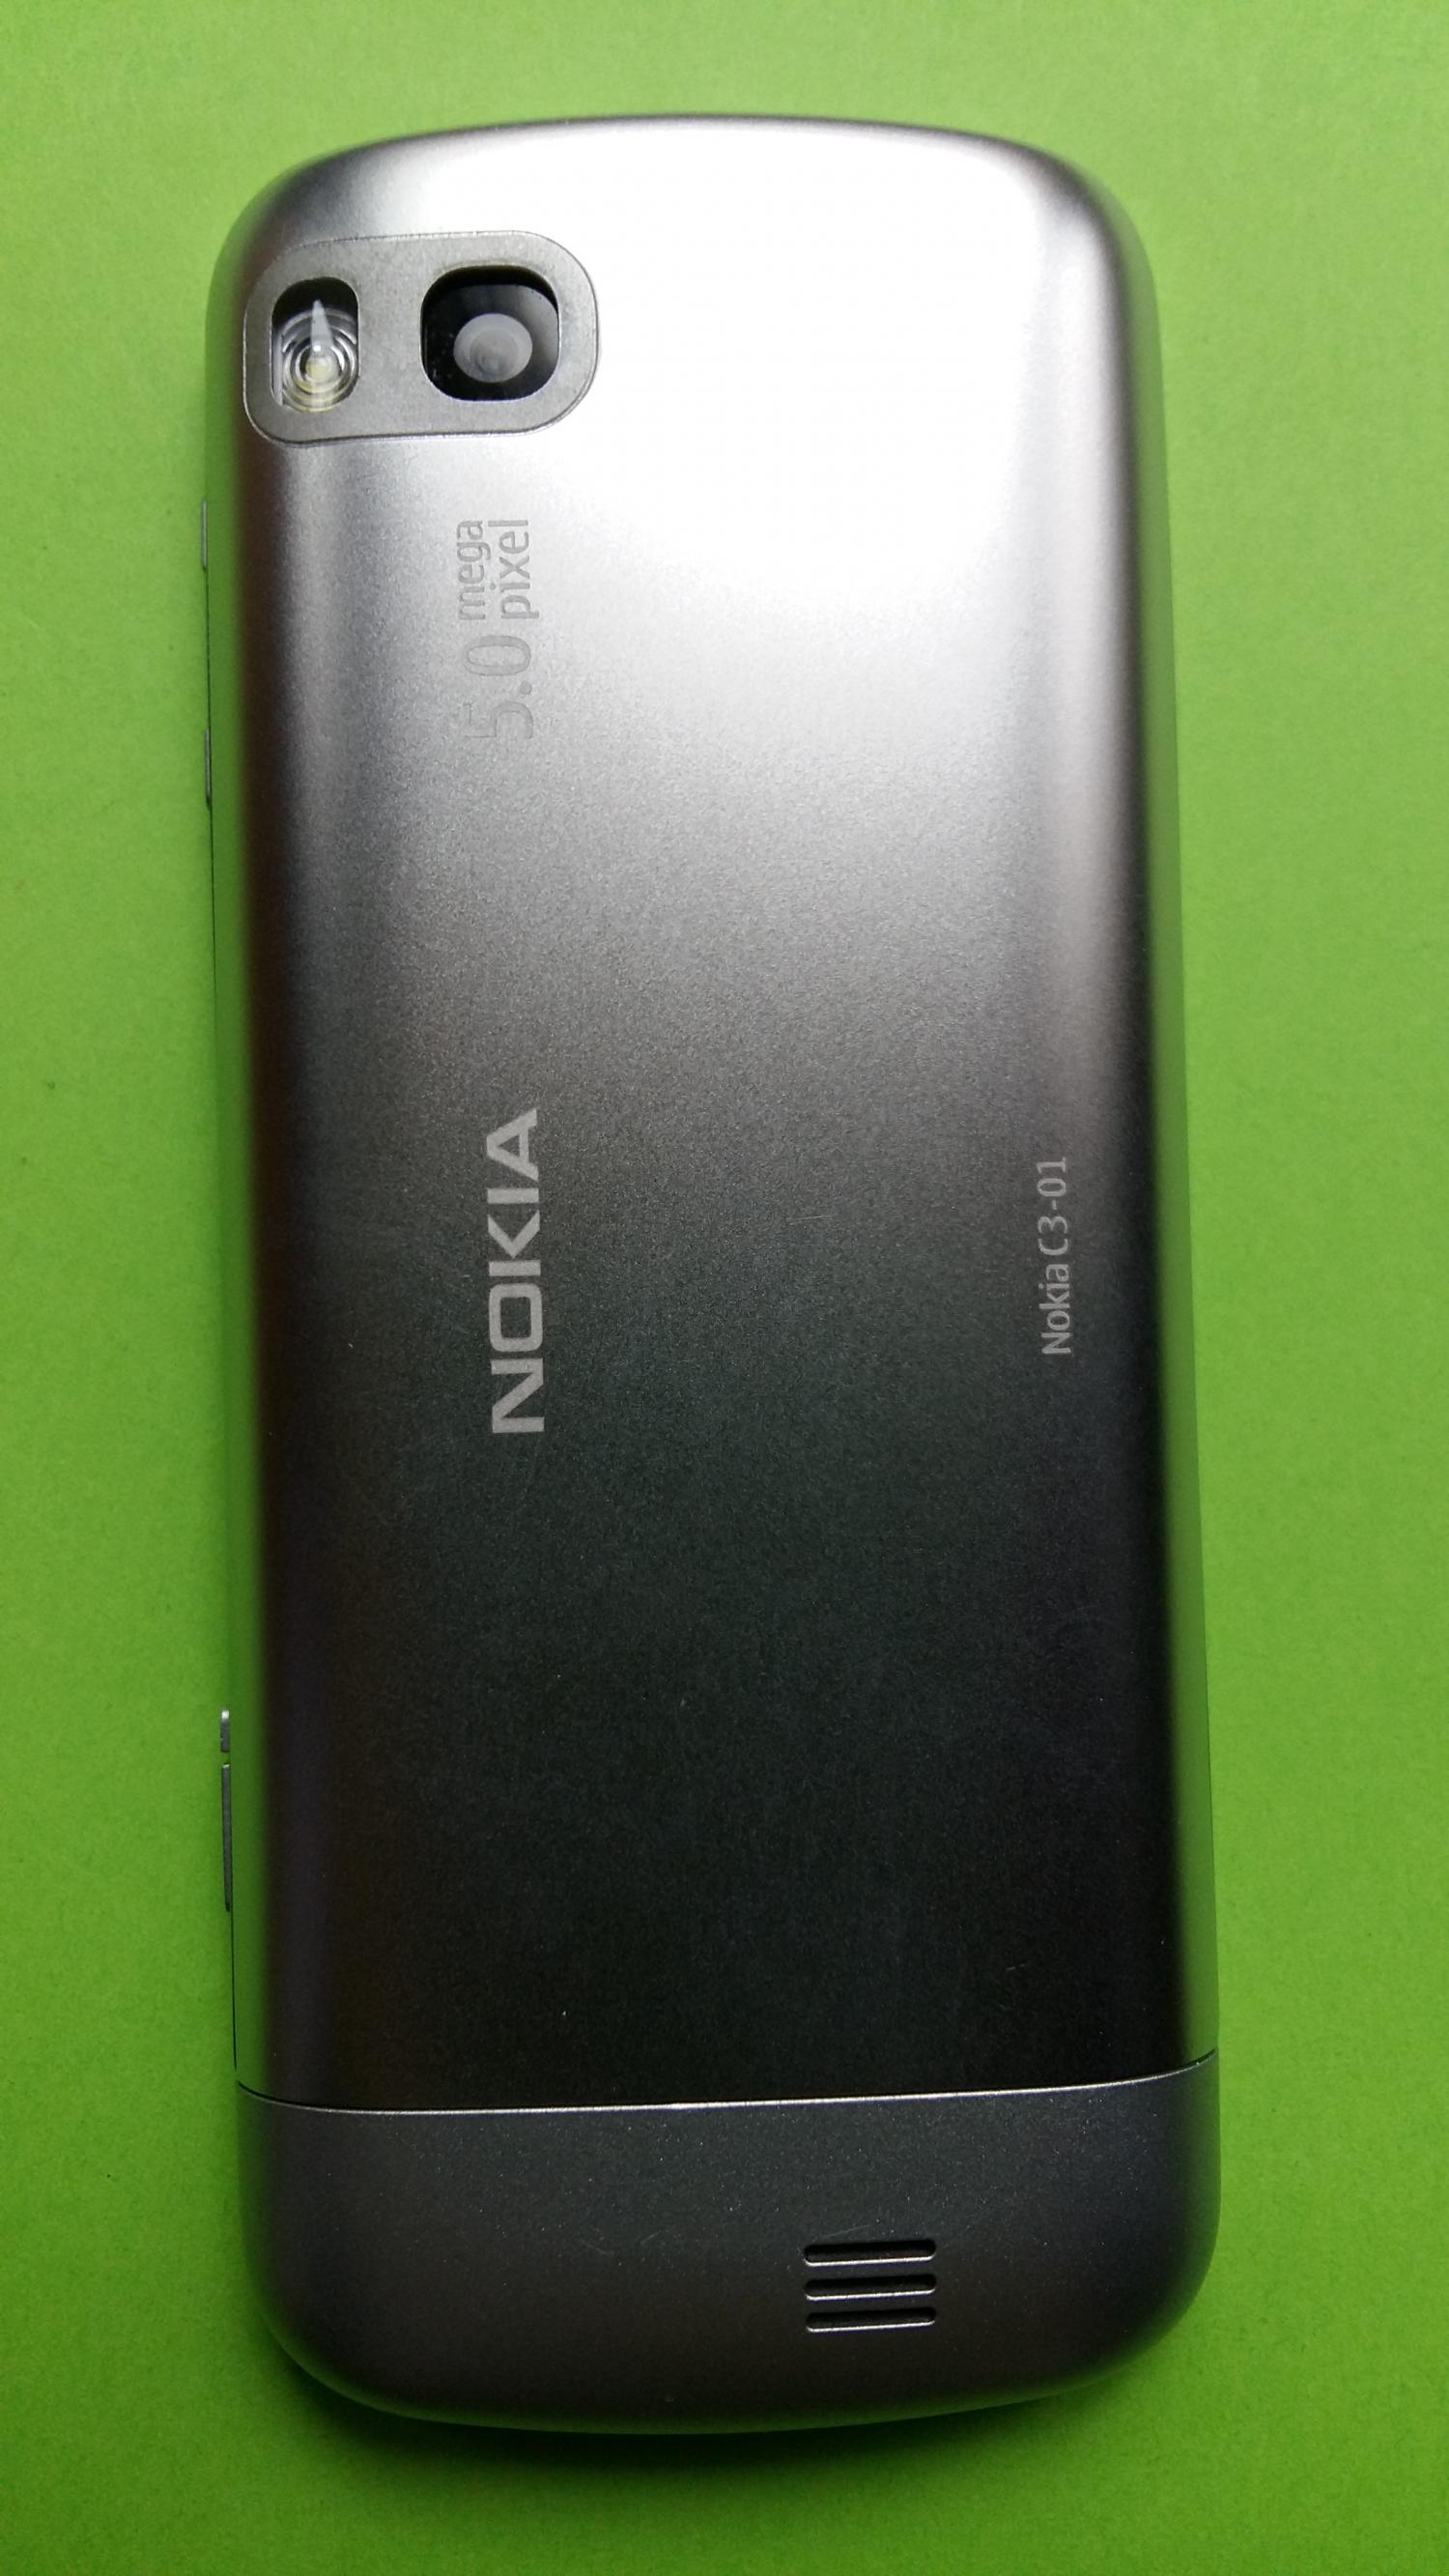 image-7339250-Nokia C3-01.5 (2)2.jpg